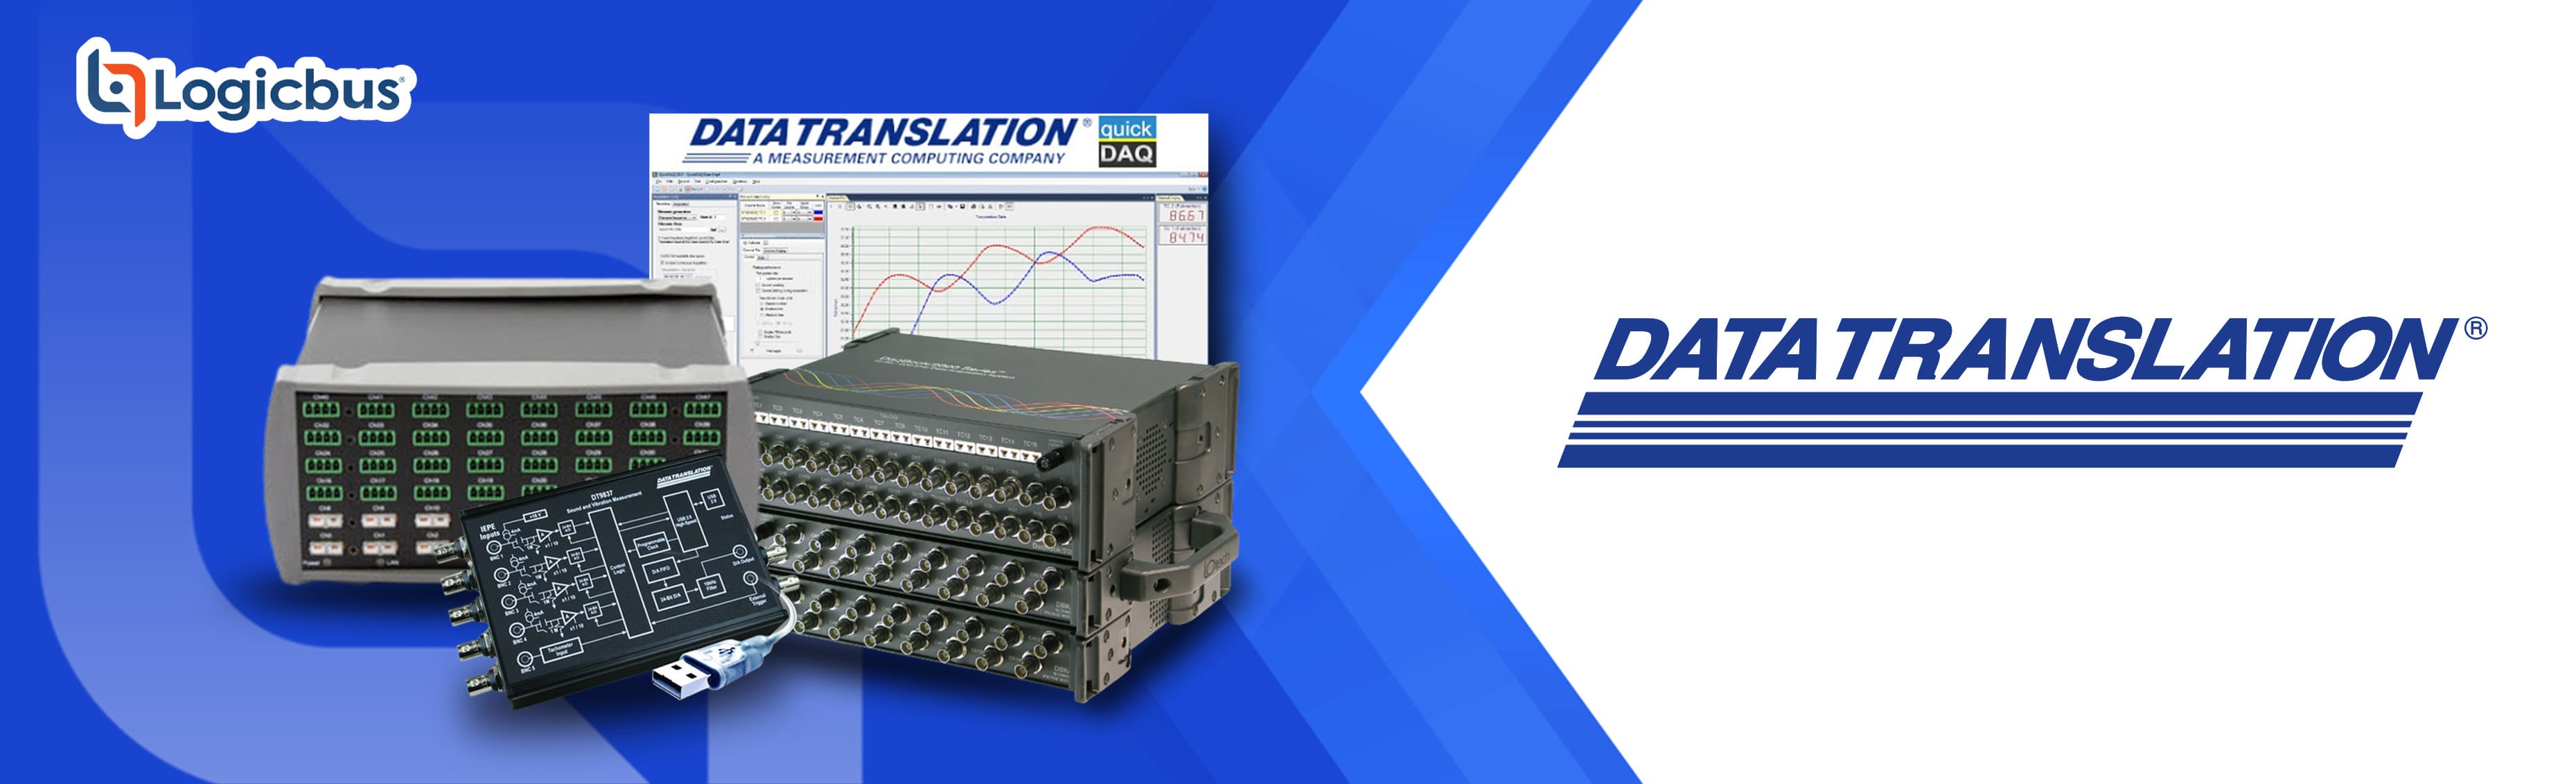 Data Translation Dispositivos avanzados de DAQ especializados en analizadores de señales dinámicas y adquisición de datos aislados. Productos específicamente diseñados para aplicaciones de escritorio exigentes e integradas